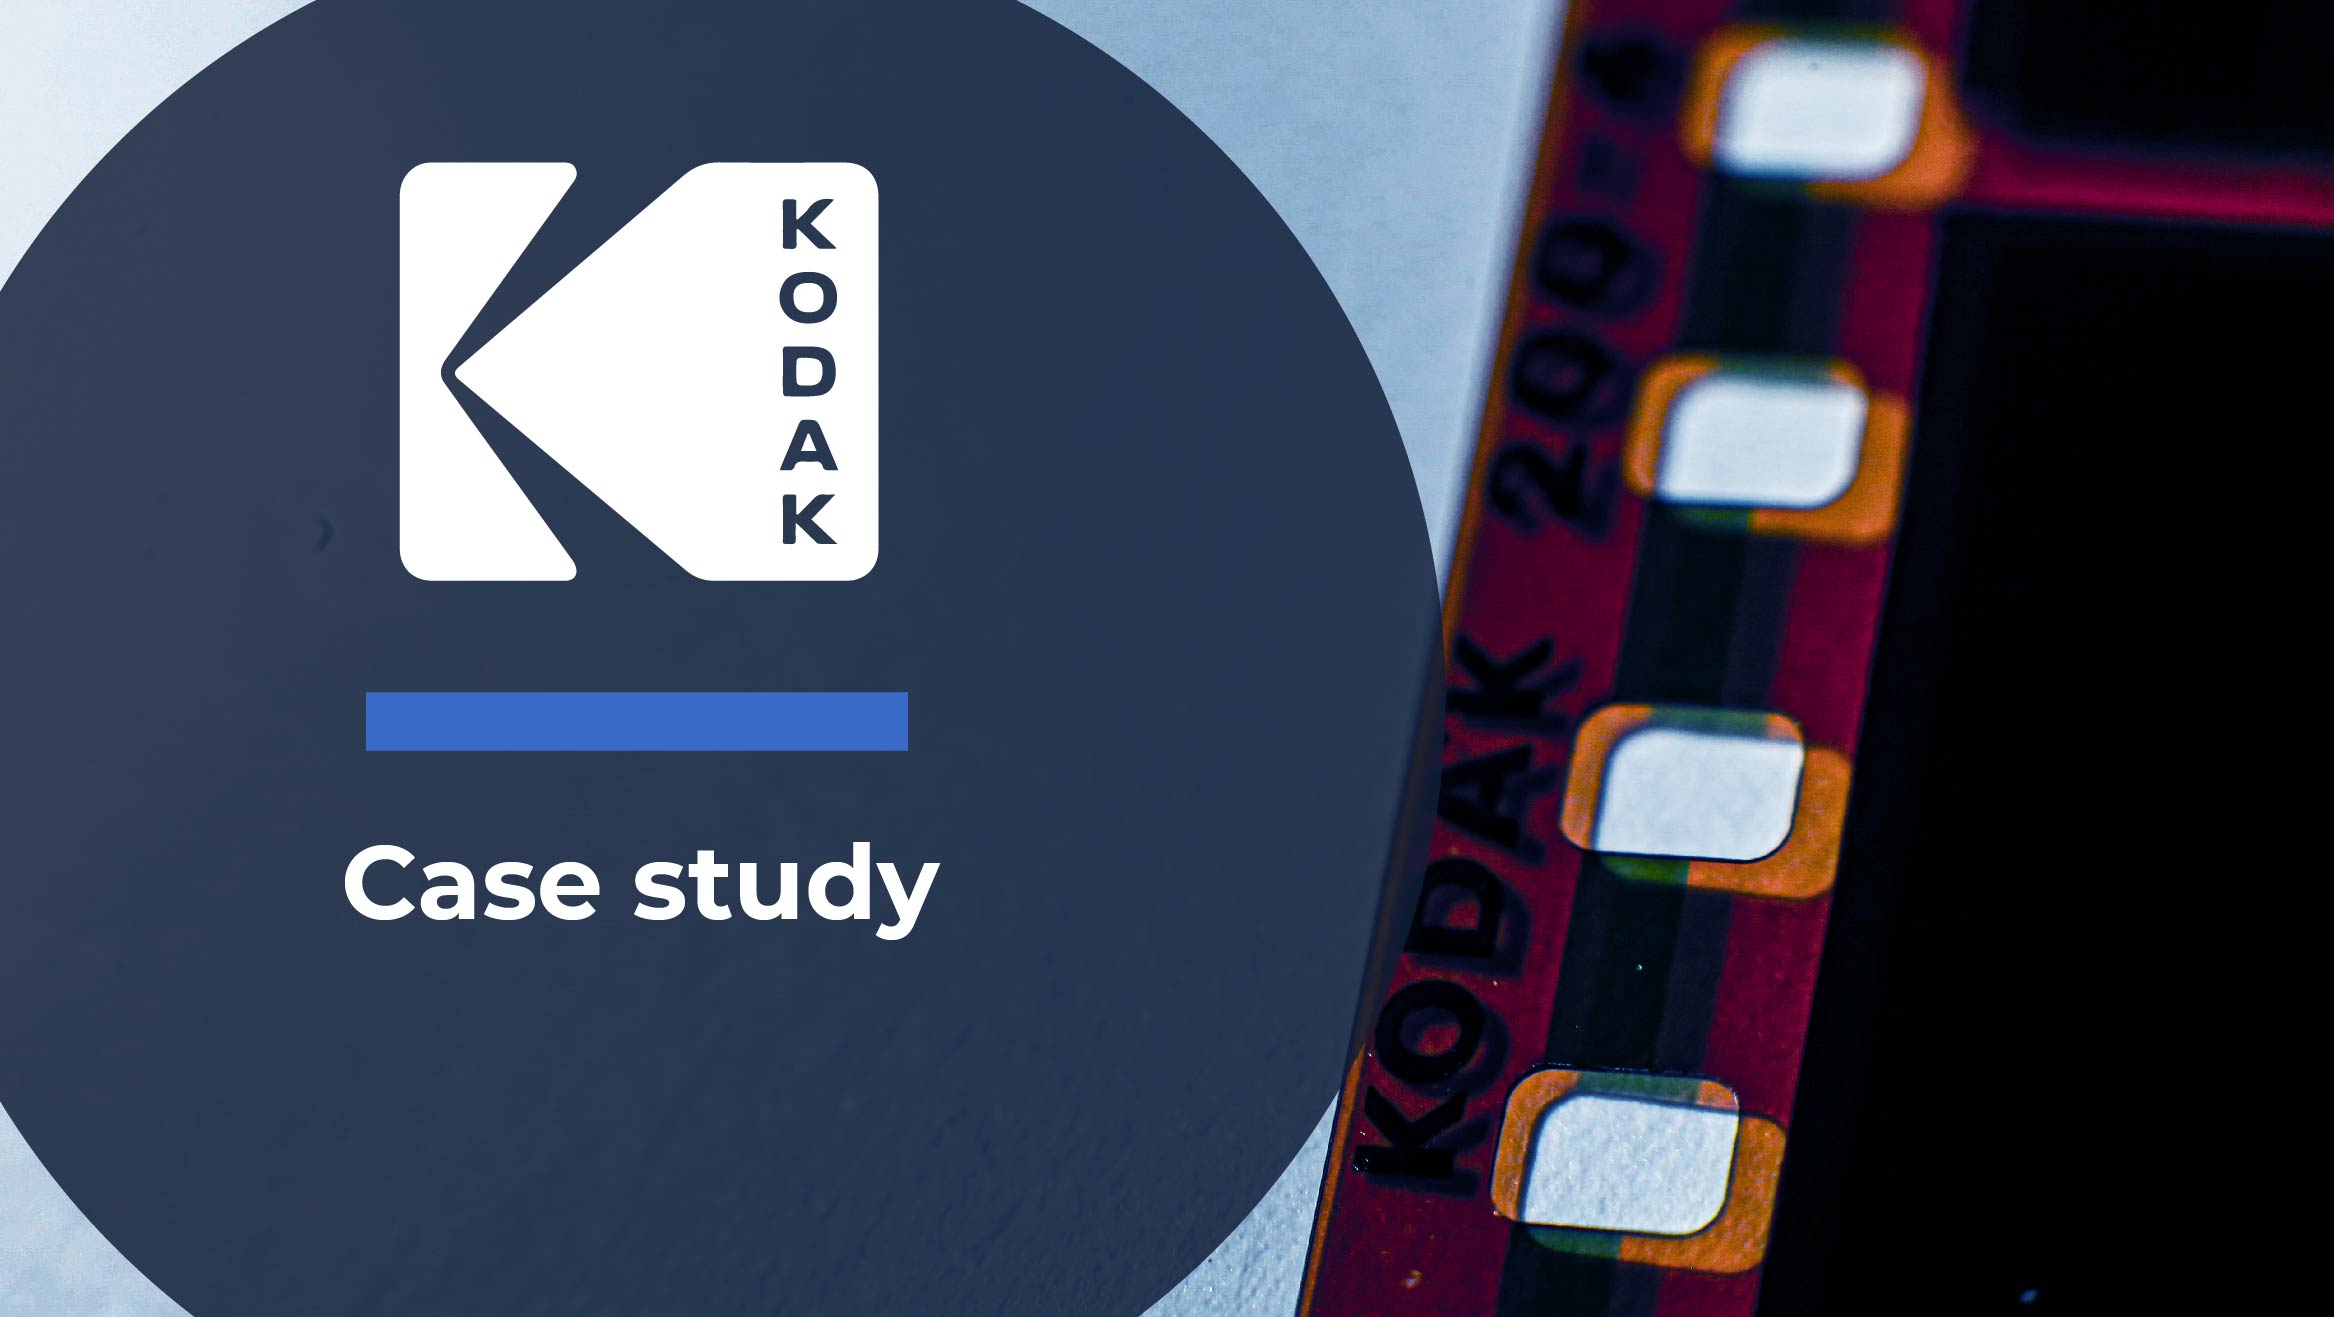 the kodak case study